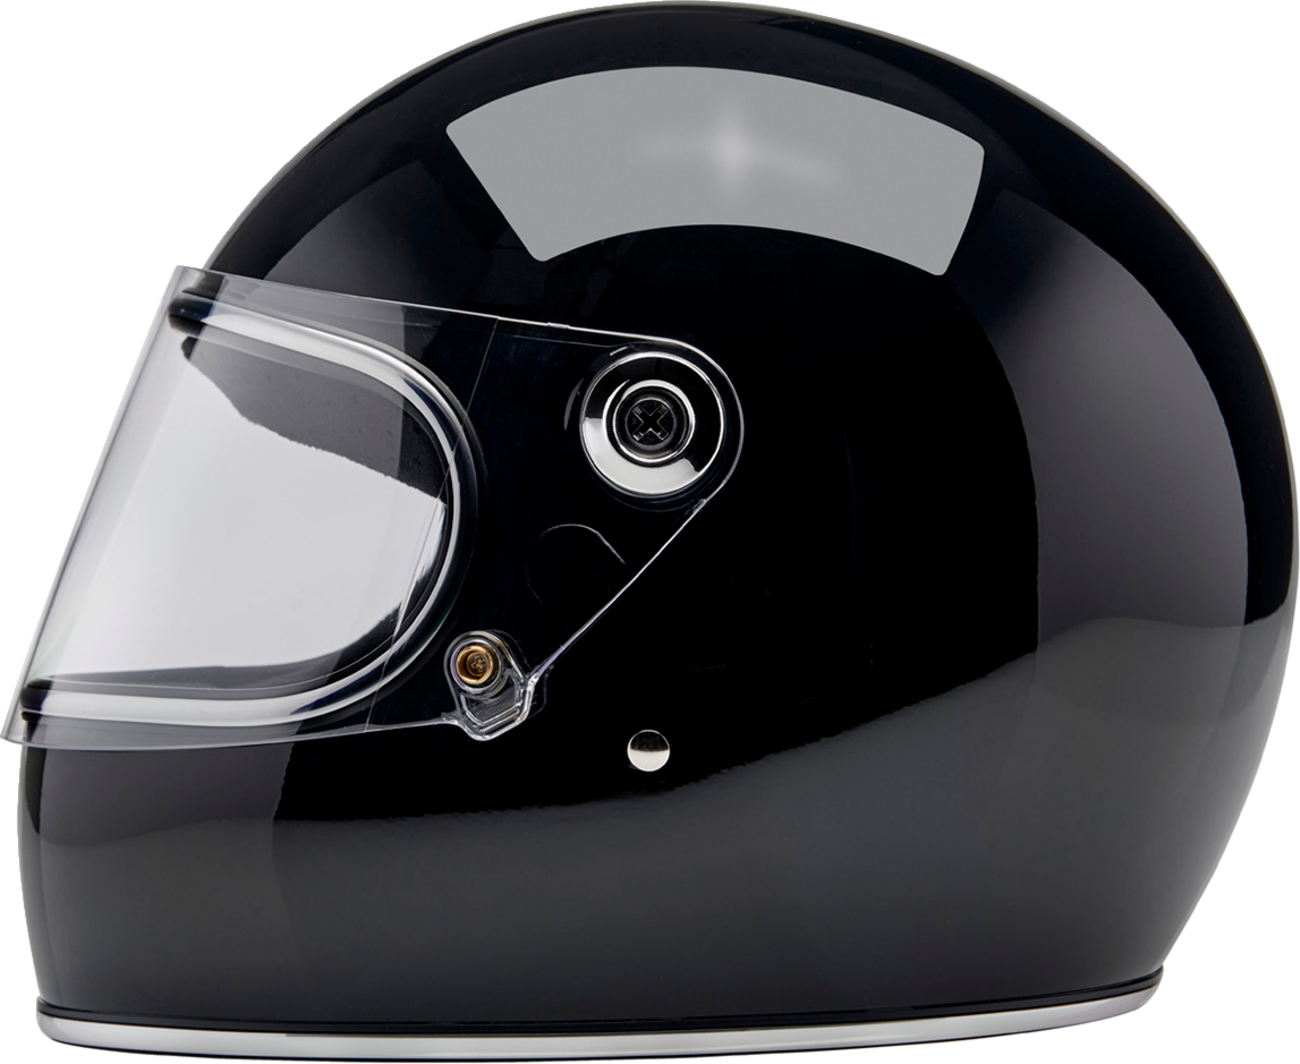 BILTWELL Gringo S Helmet - Gloss Black - Small 1003-101-502